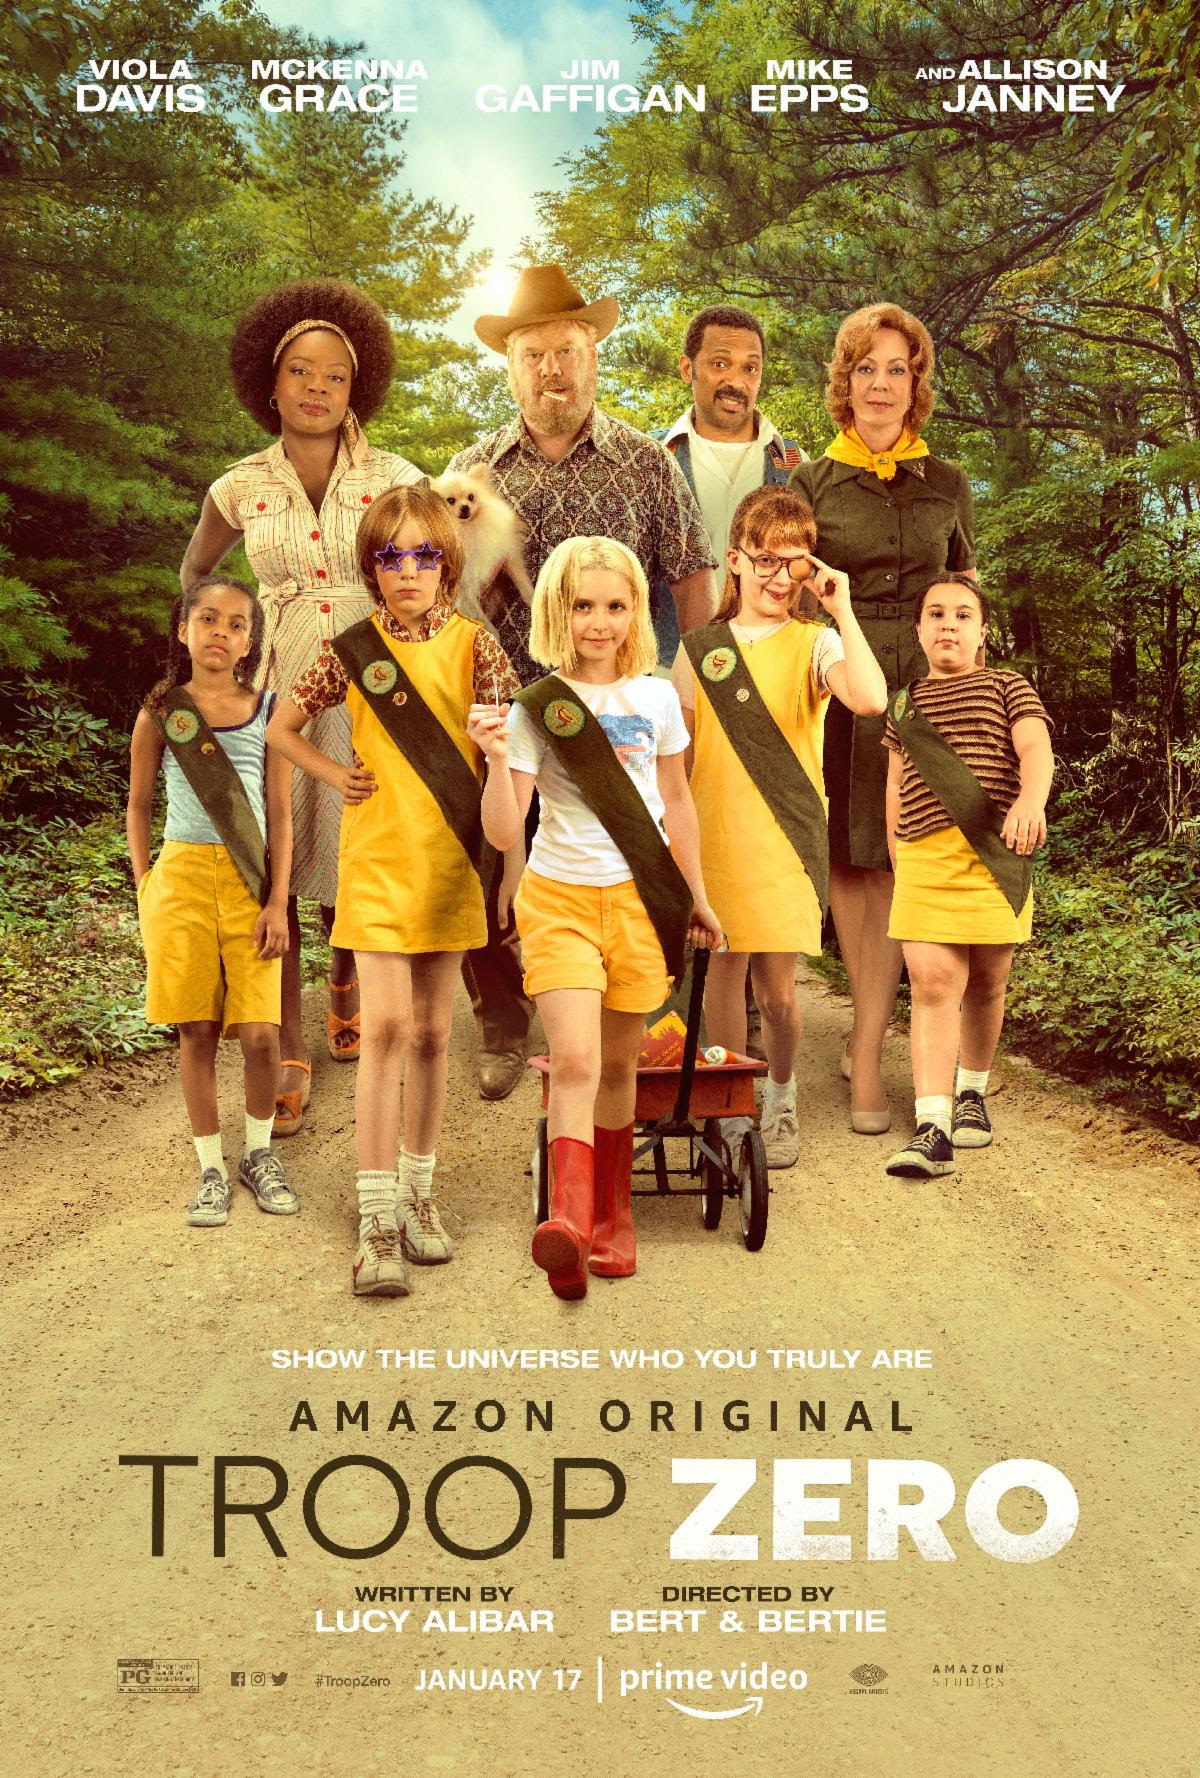 Troop Zero Trailer starring Viola Davis, Jim Gaffigan and Allison Janney1200 x 1778